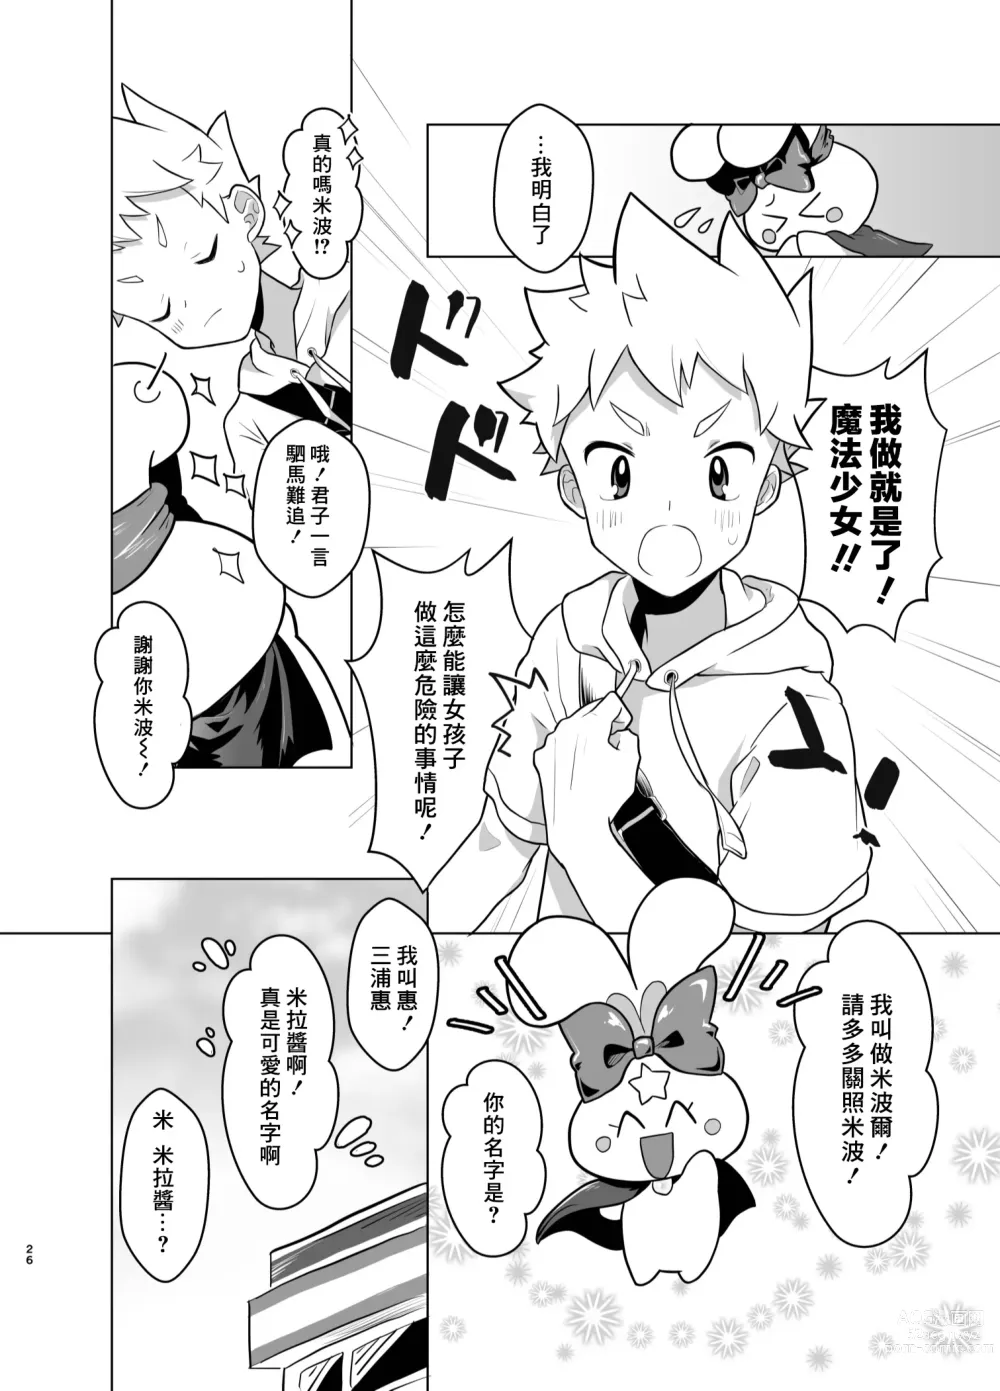 Page 25 of doujinshi Mahou Shoujo Mirakuru Mirachan丨魔法少女奇蹟米拉醬 (decensored)